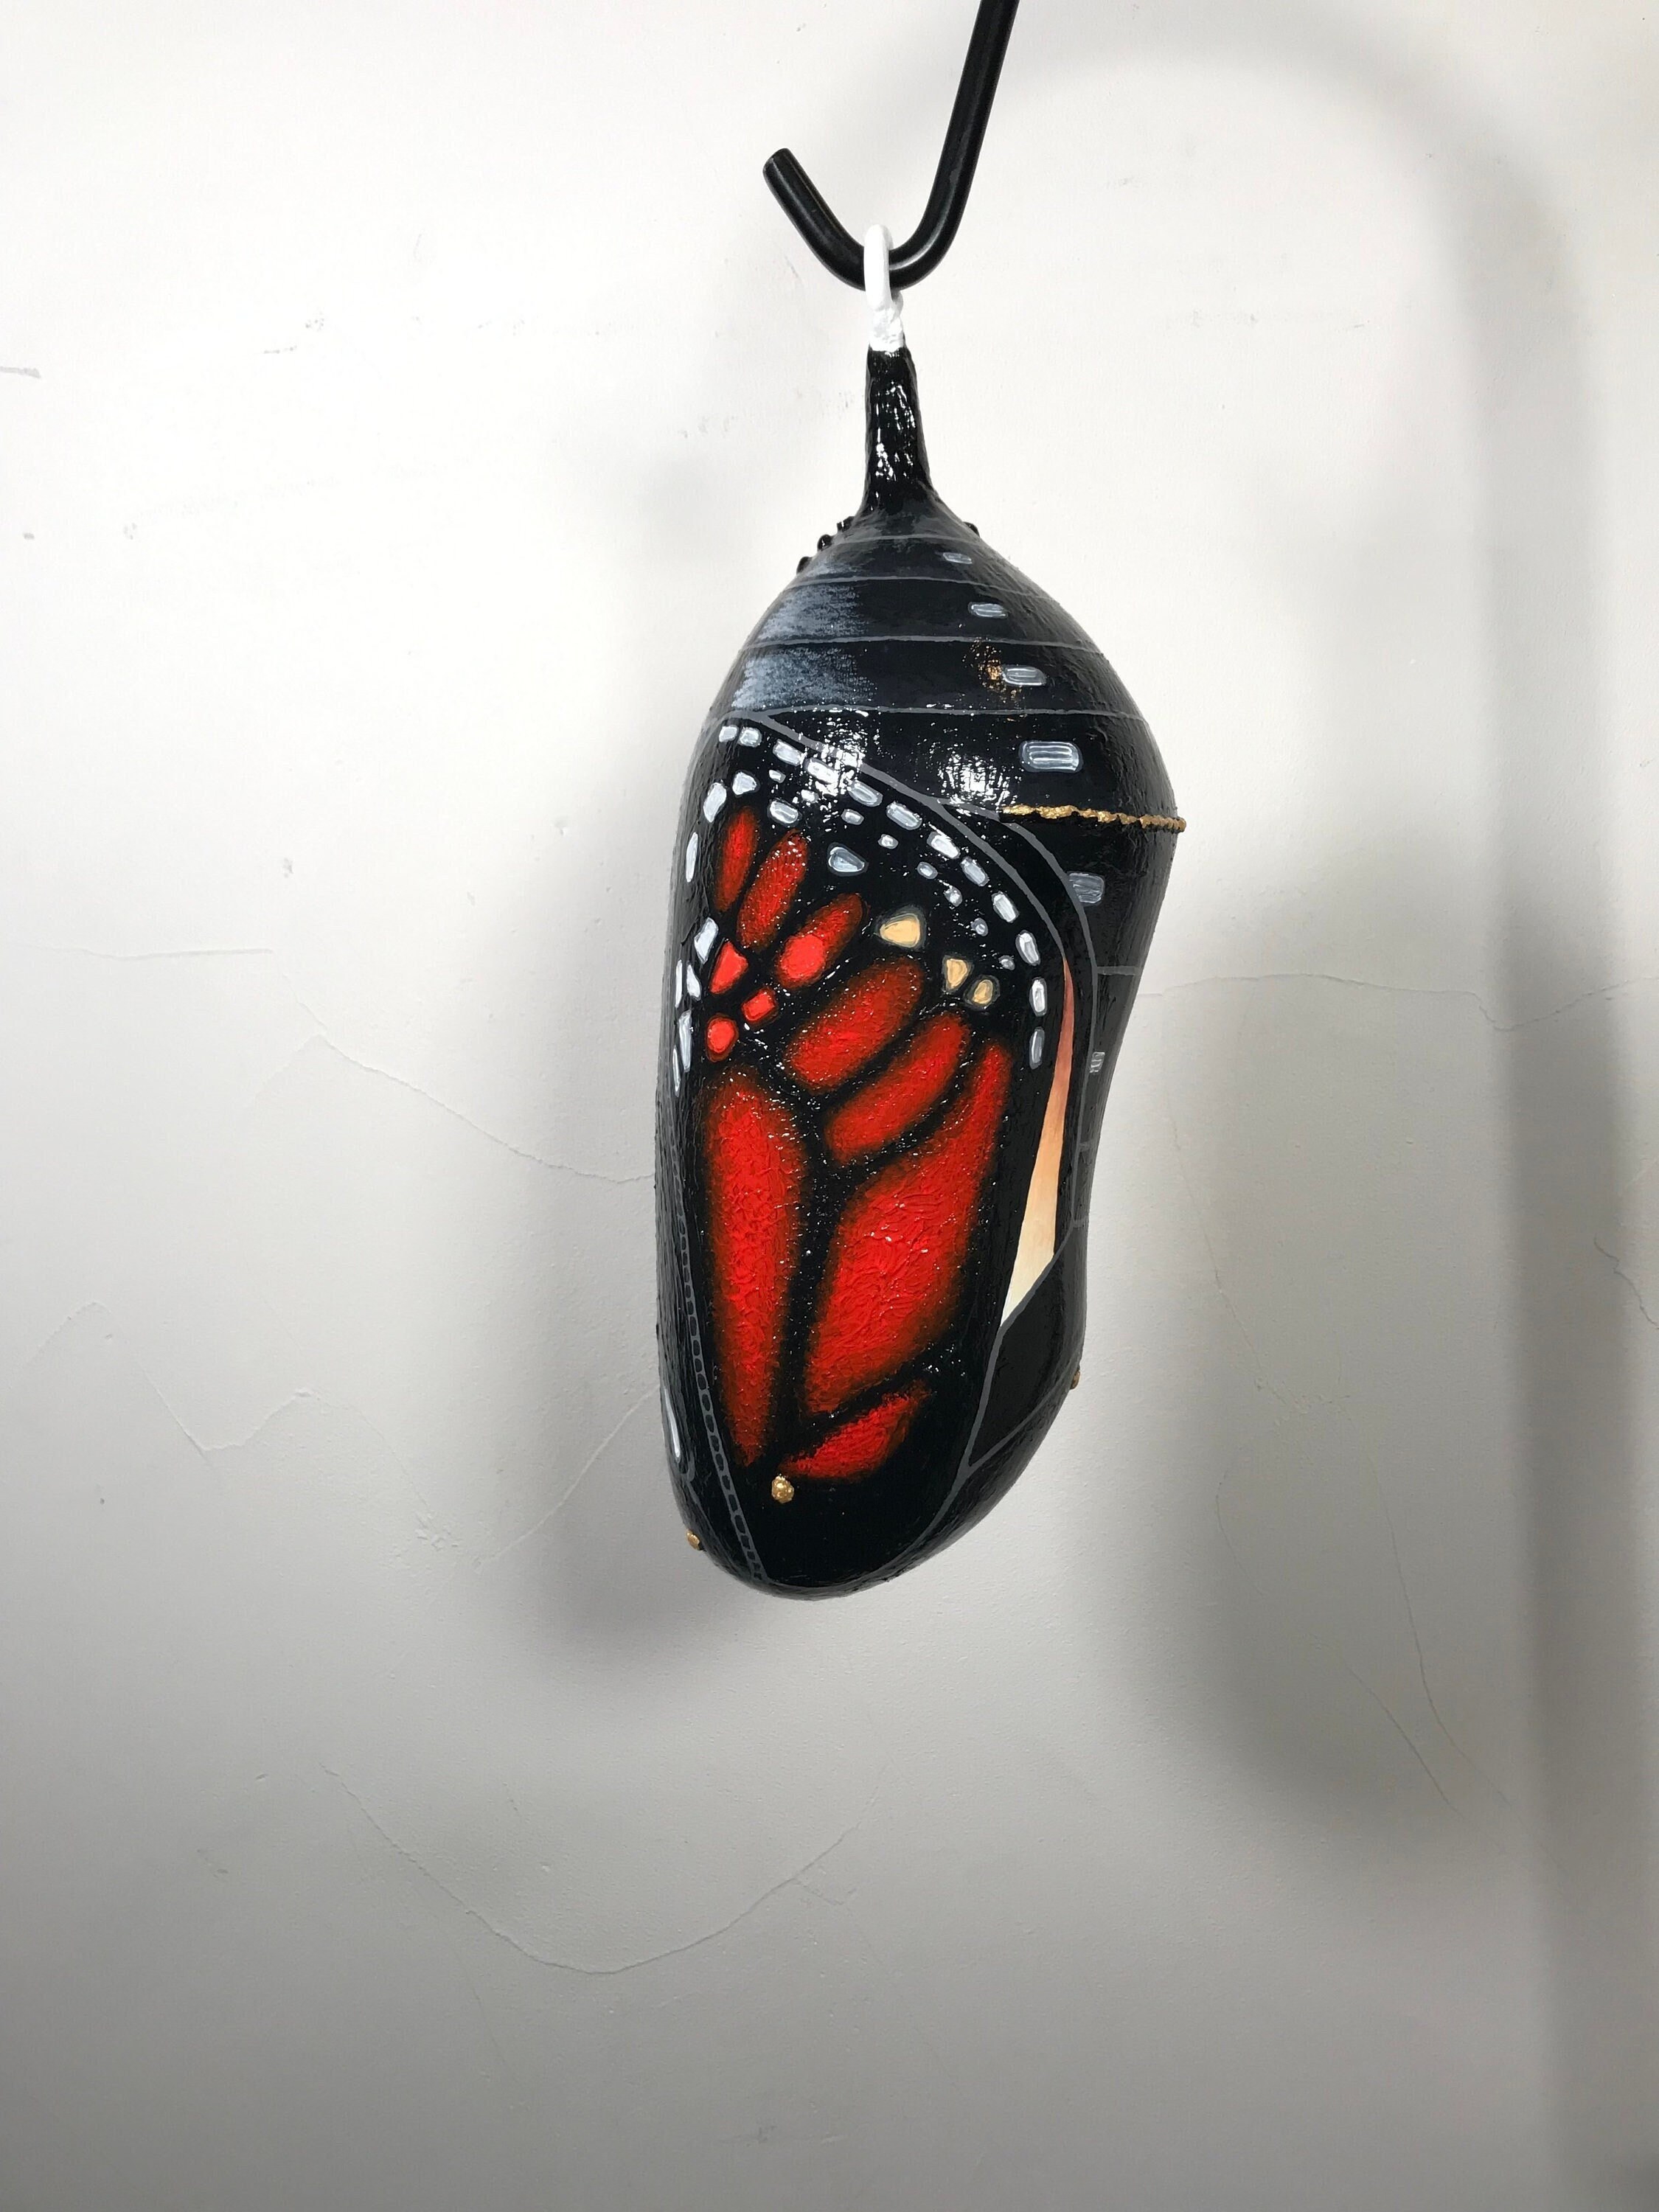 3 Butterfly Monarch Pkg/12